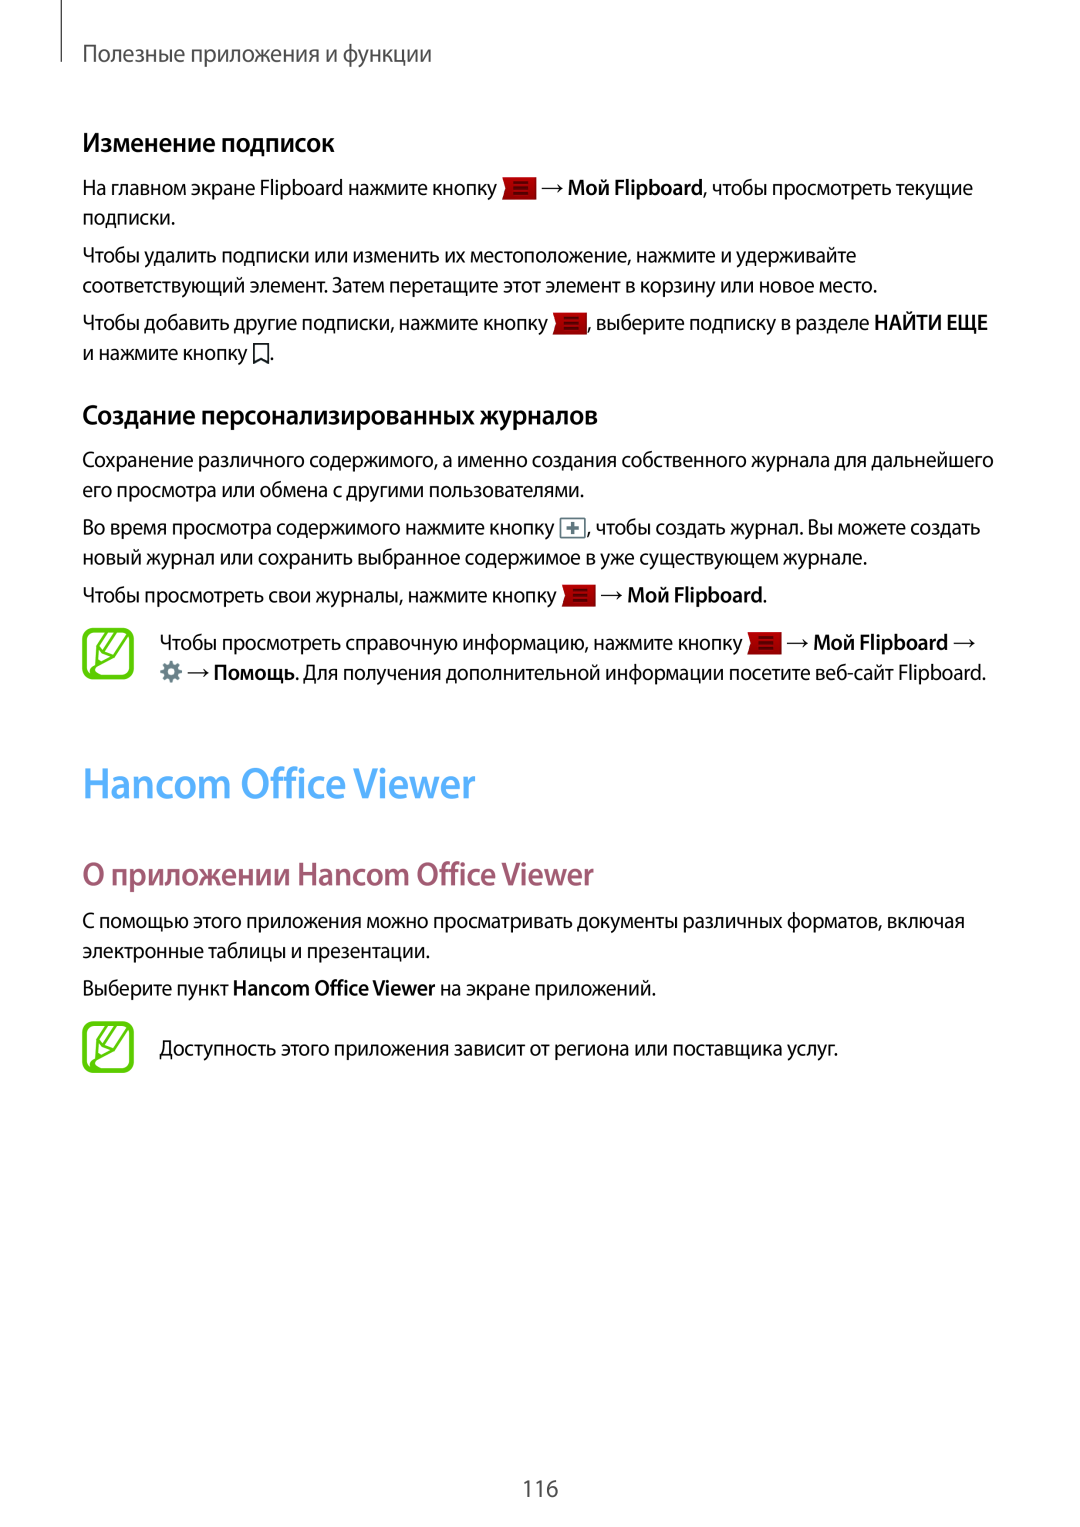 Samsung SM-T800NZWYSER О приложении Hancom Office Viewer, Изменение подписок, Создание персонализированных журналов 